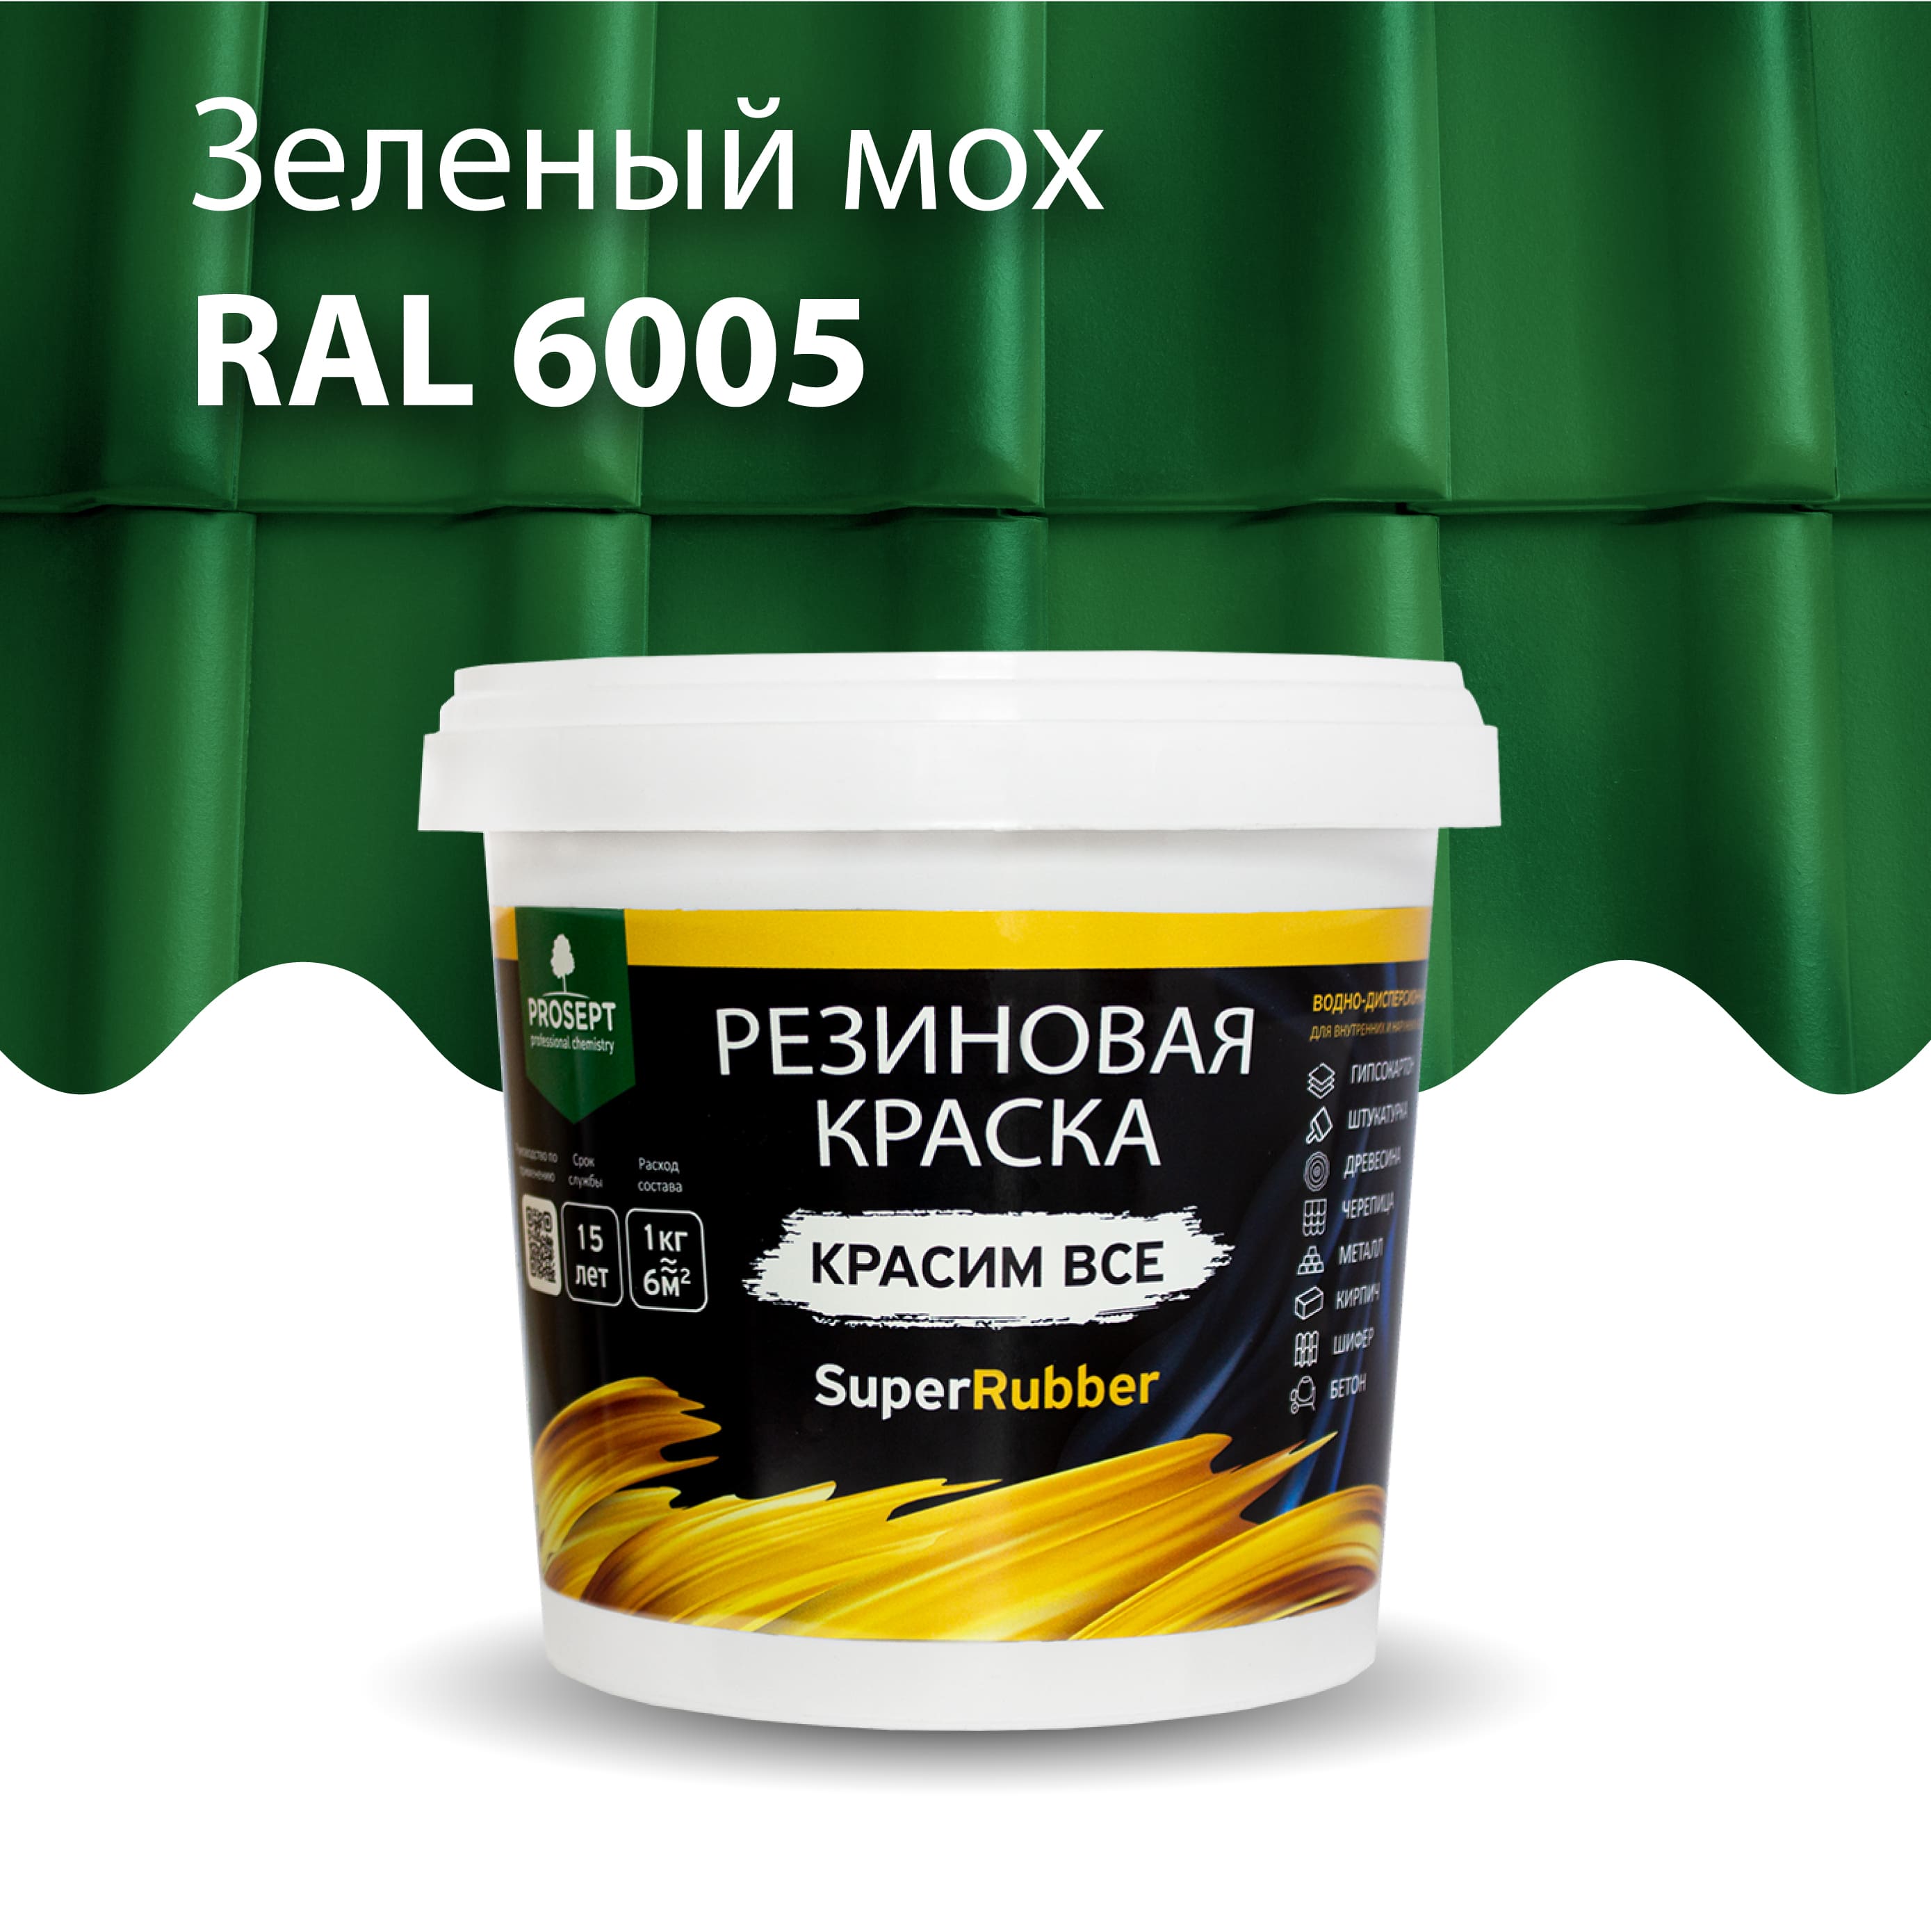 Краска Резиновая краска SuperRubber, RAL 6005 (зеленый мох), 1 кг